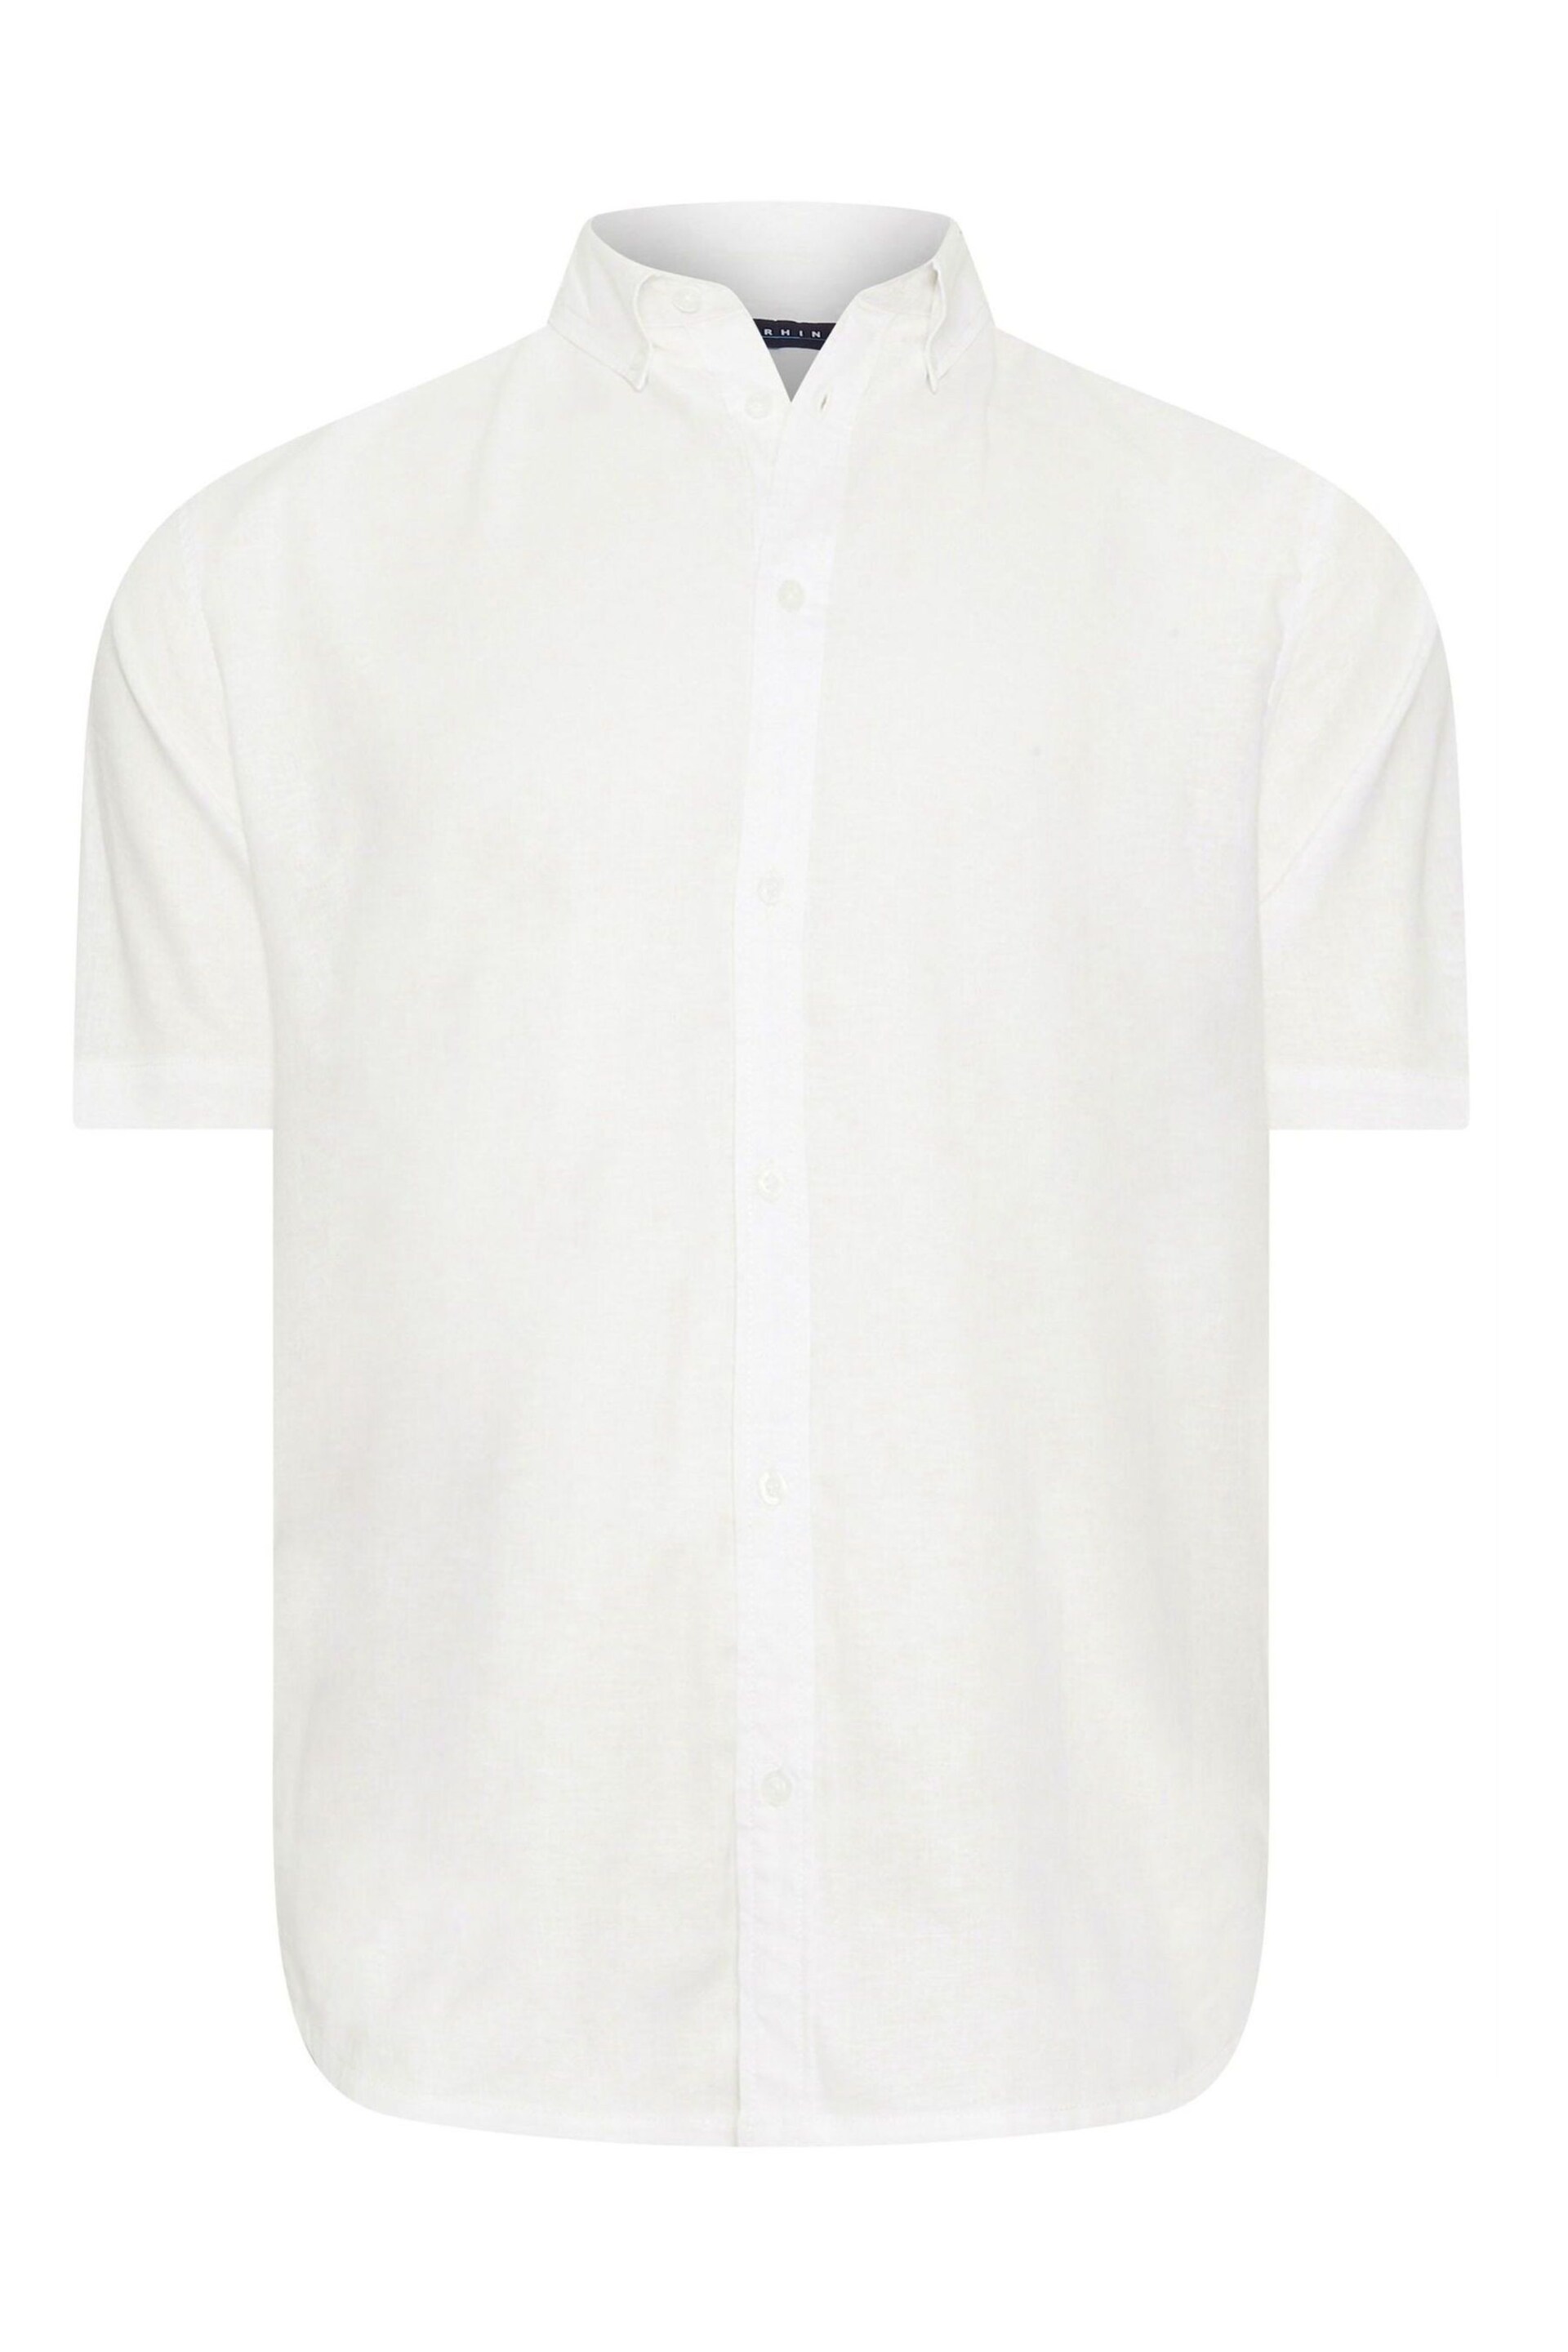 BadRhino Big & Tall White Premium Short Sleeve Linen Shirt - Image 3 of 4